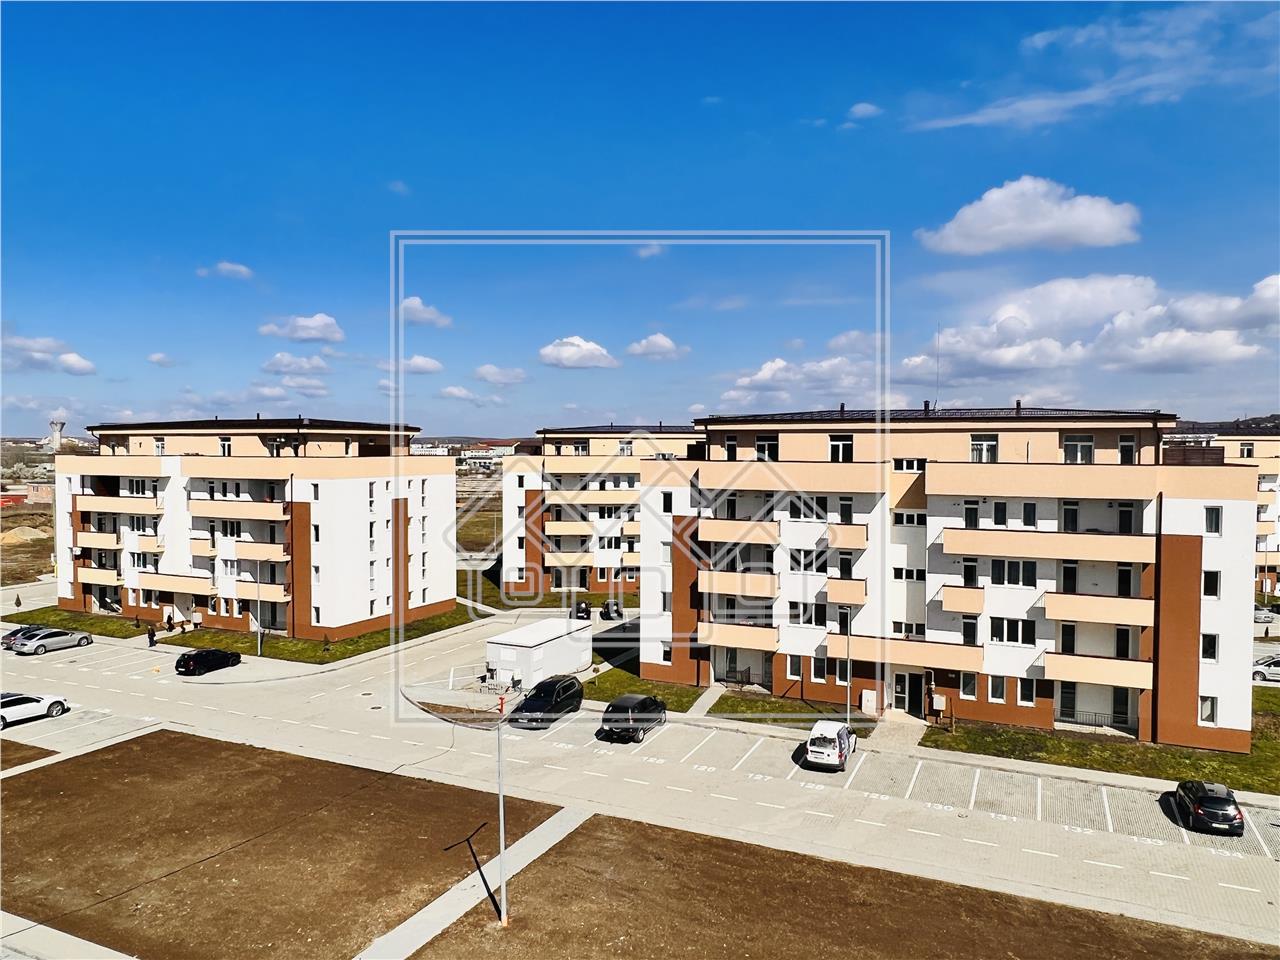 Wohnung zum Verkauf in Sibiu -  - Zwischengeschoss - Geb?ude mit LIFT